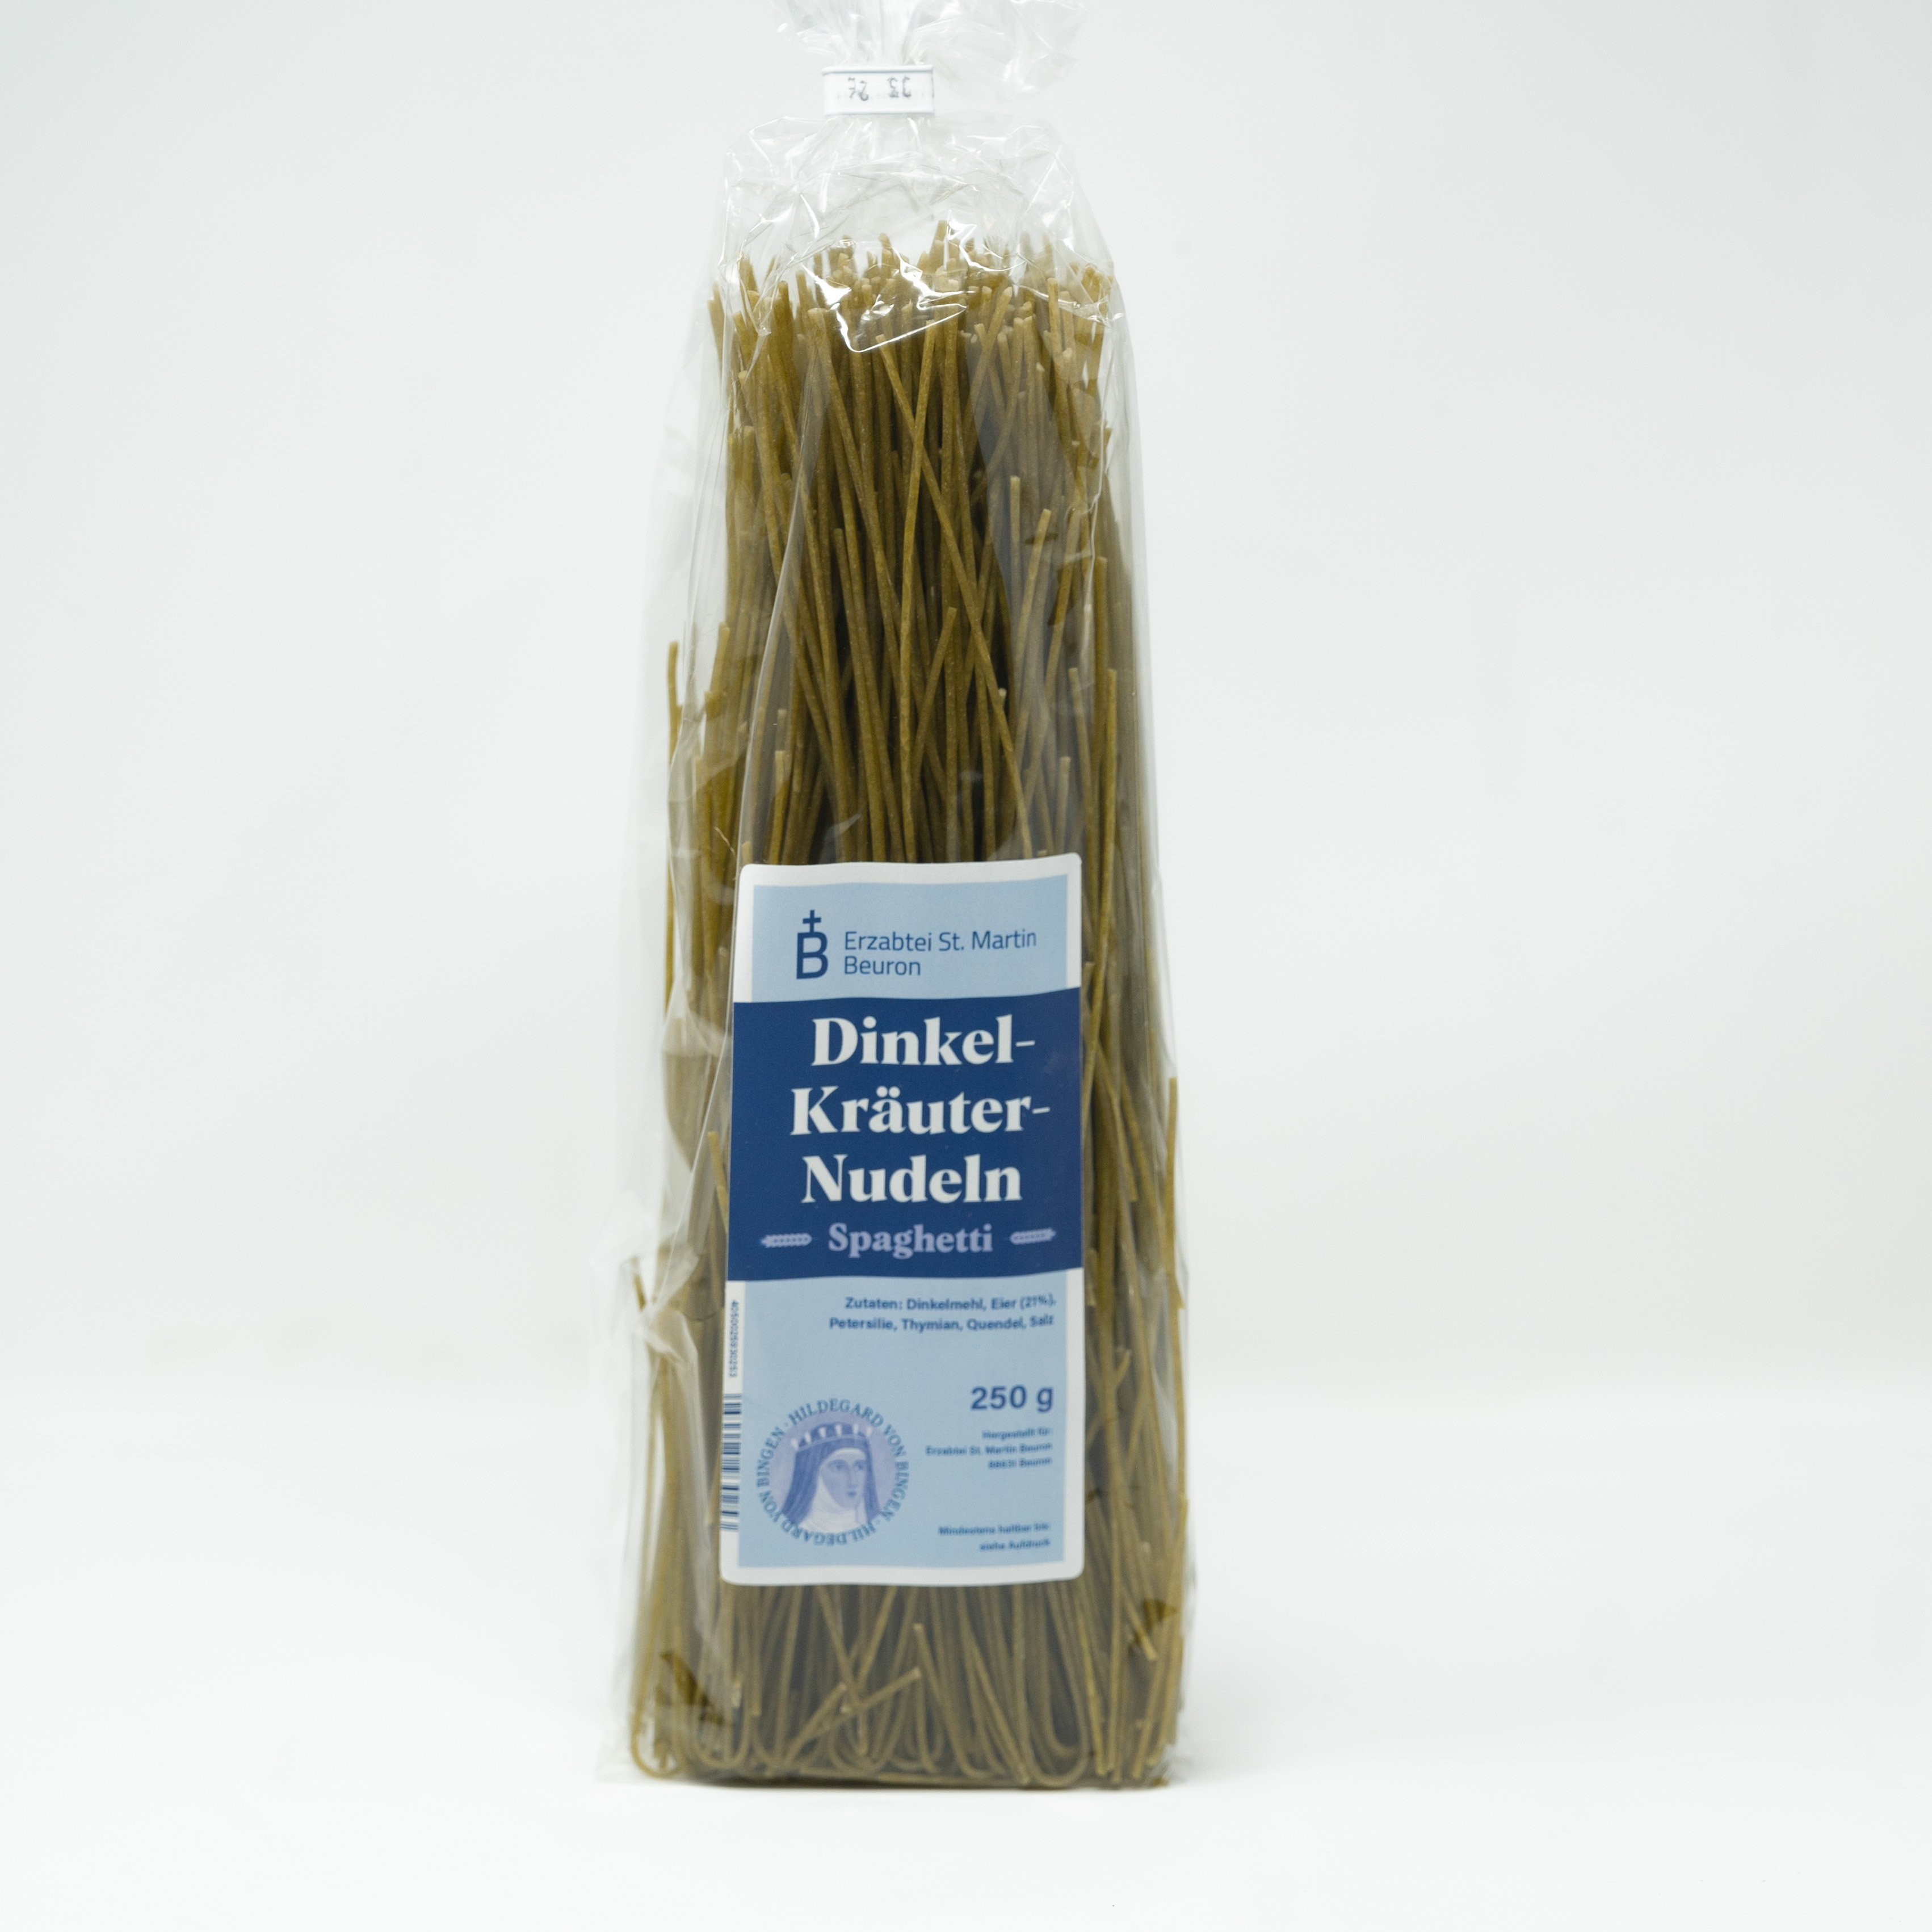 Dinkel-Kräuter-Nudeln "Spaghetti"